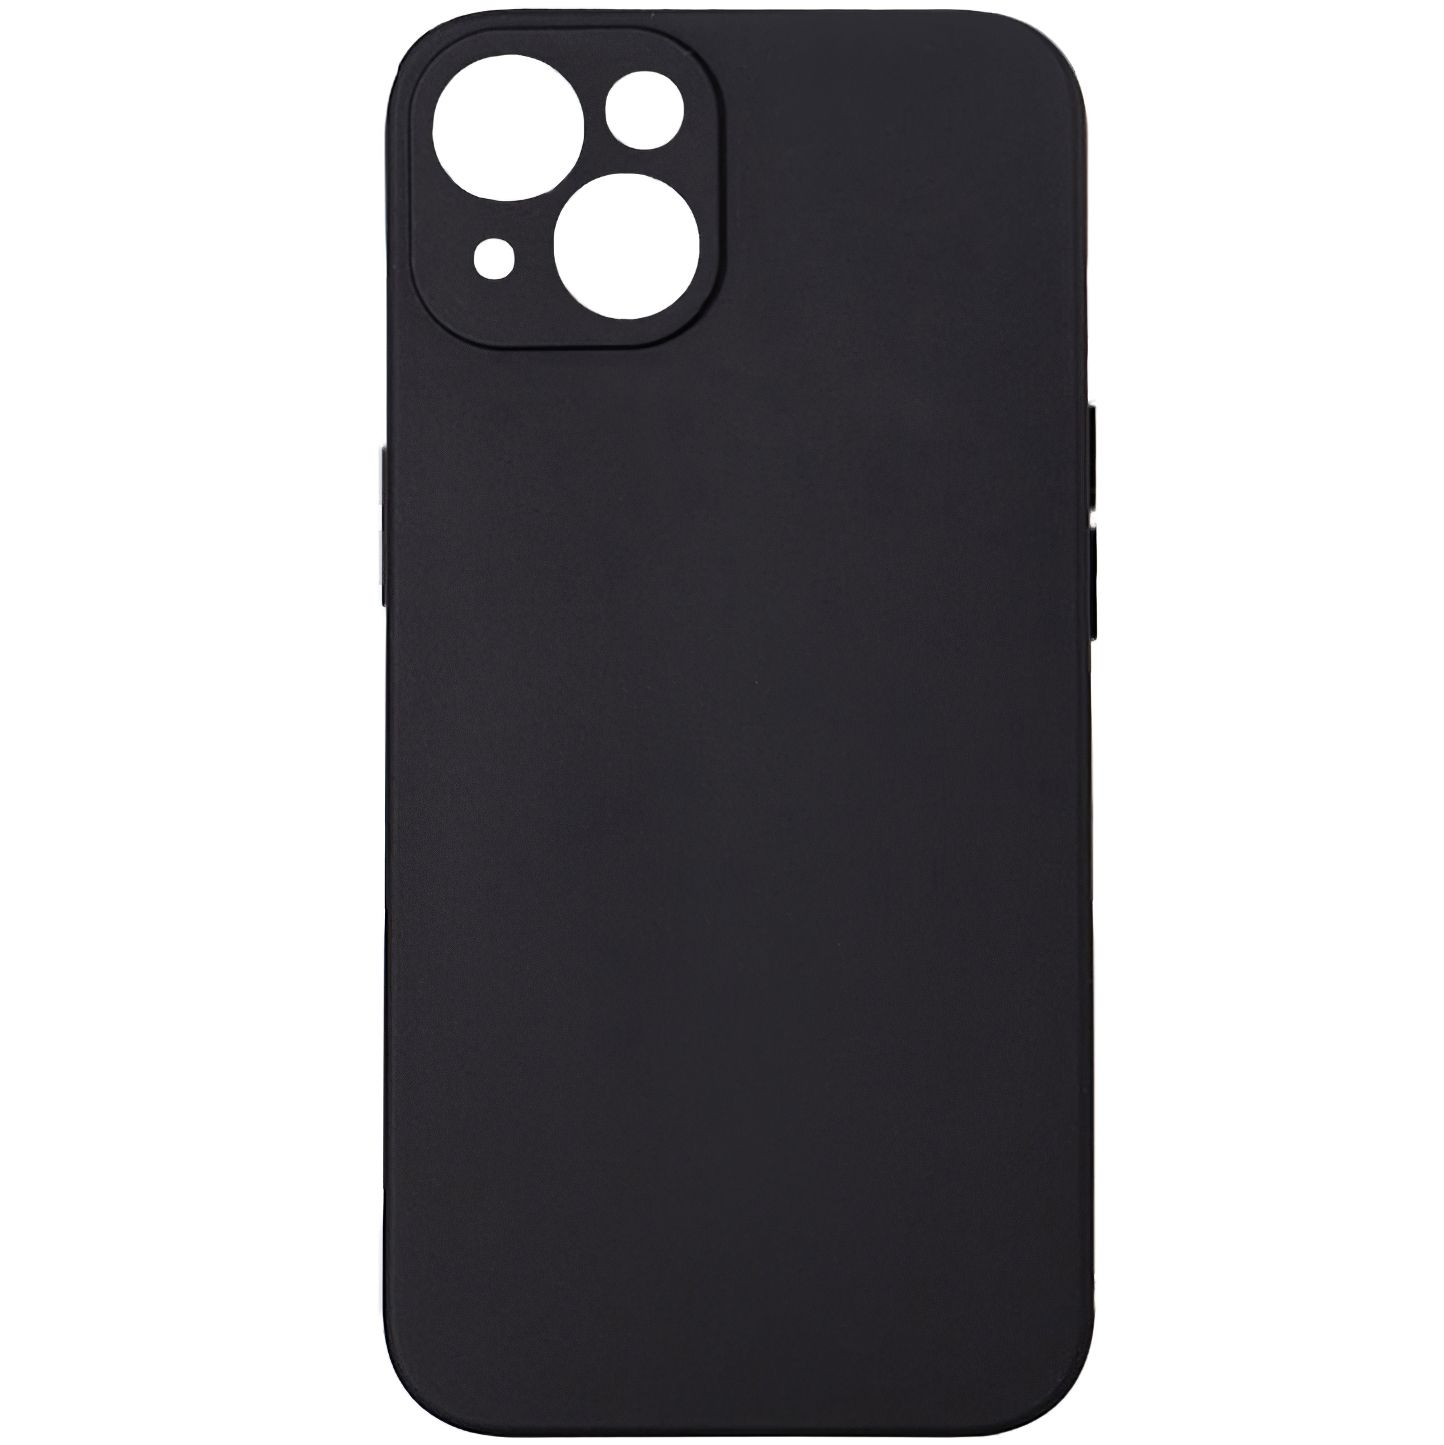 HUSA SMARTPHONE Spacer pentru Iphone 14, grosime 1.5mm, material flexibil TPU, negru 